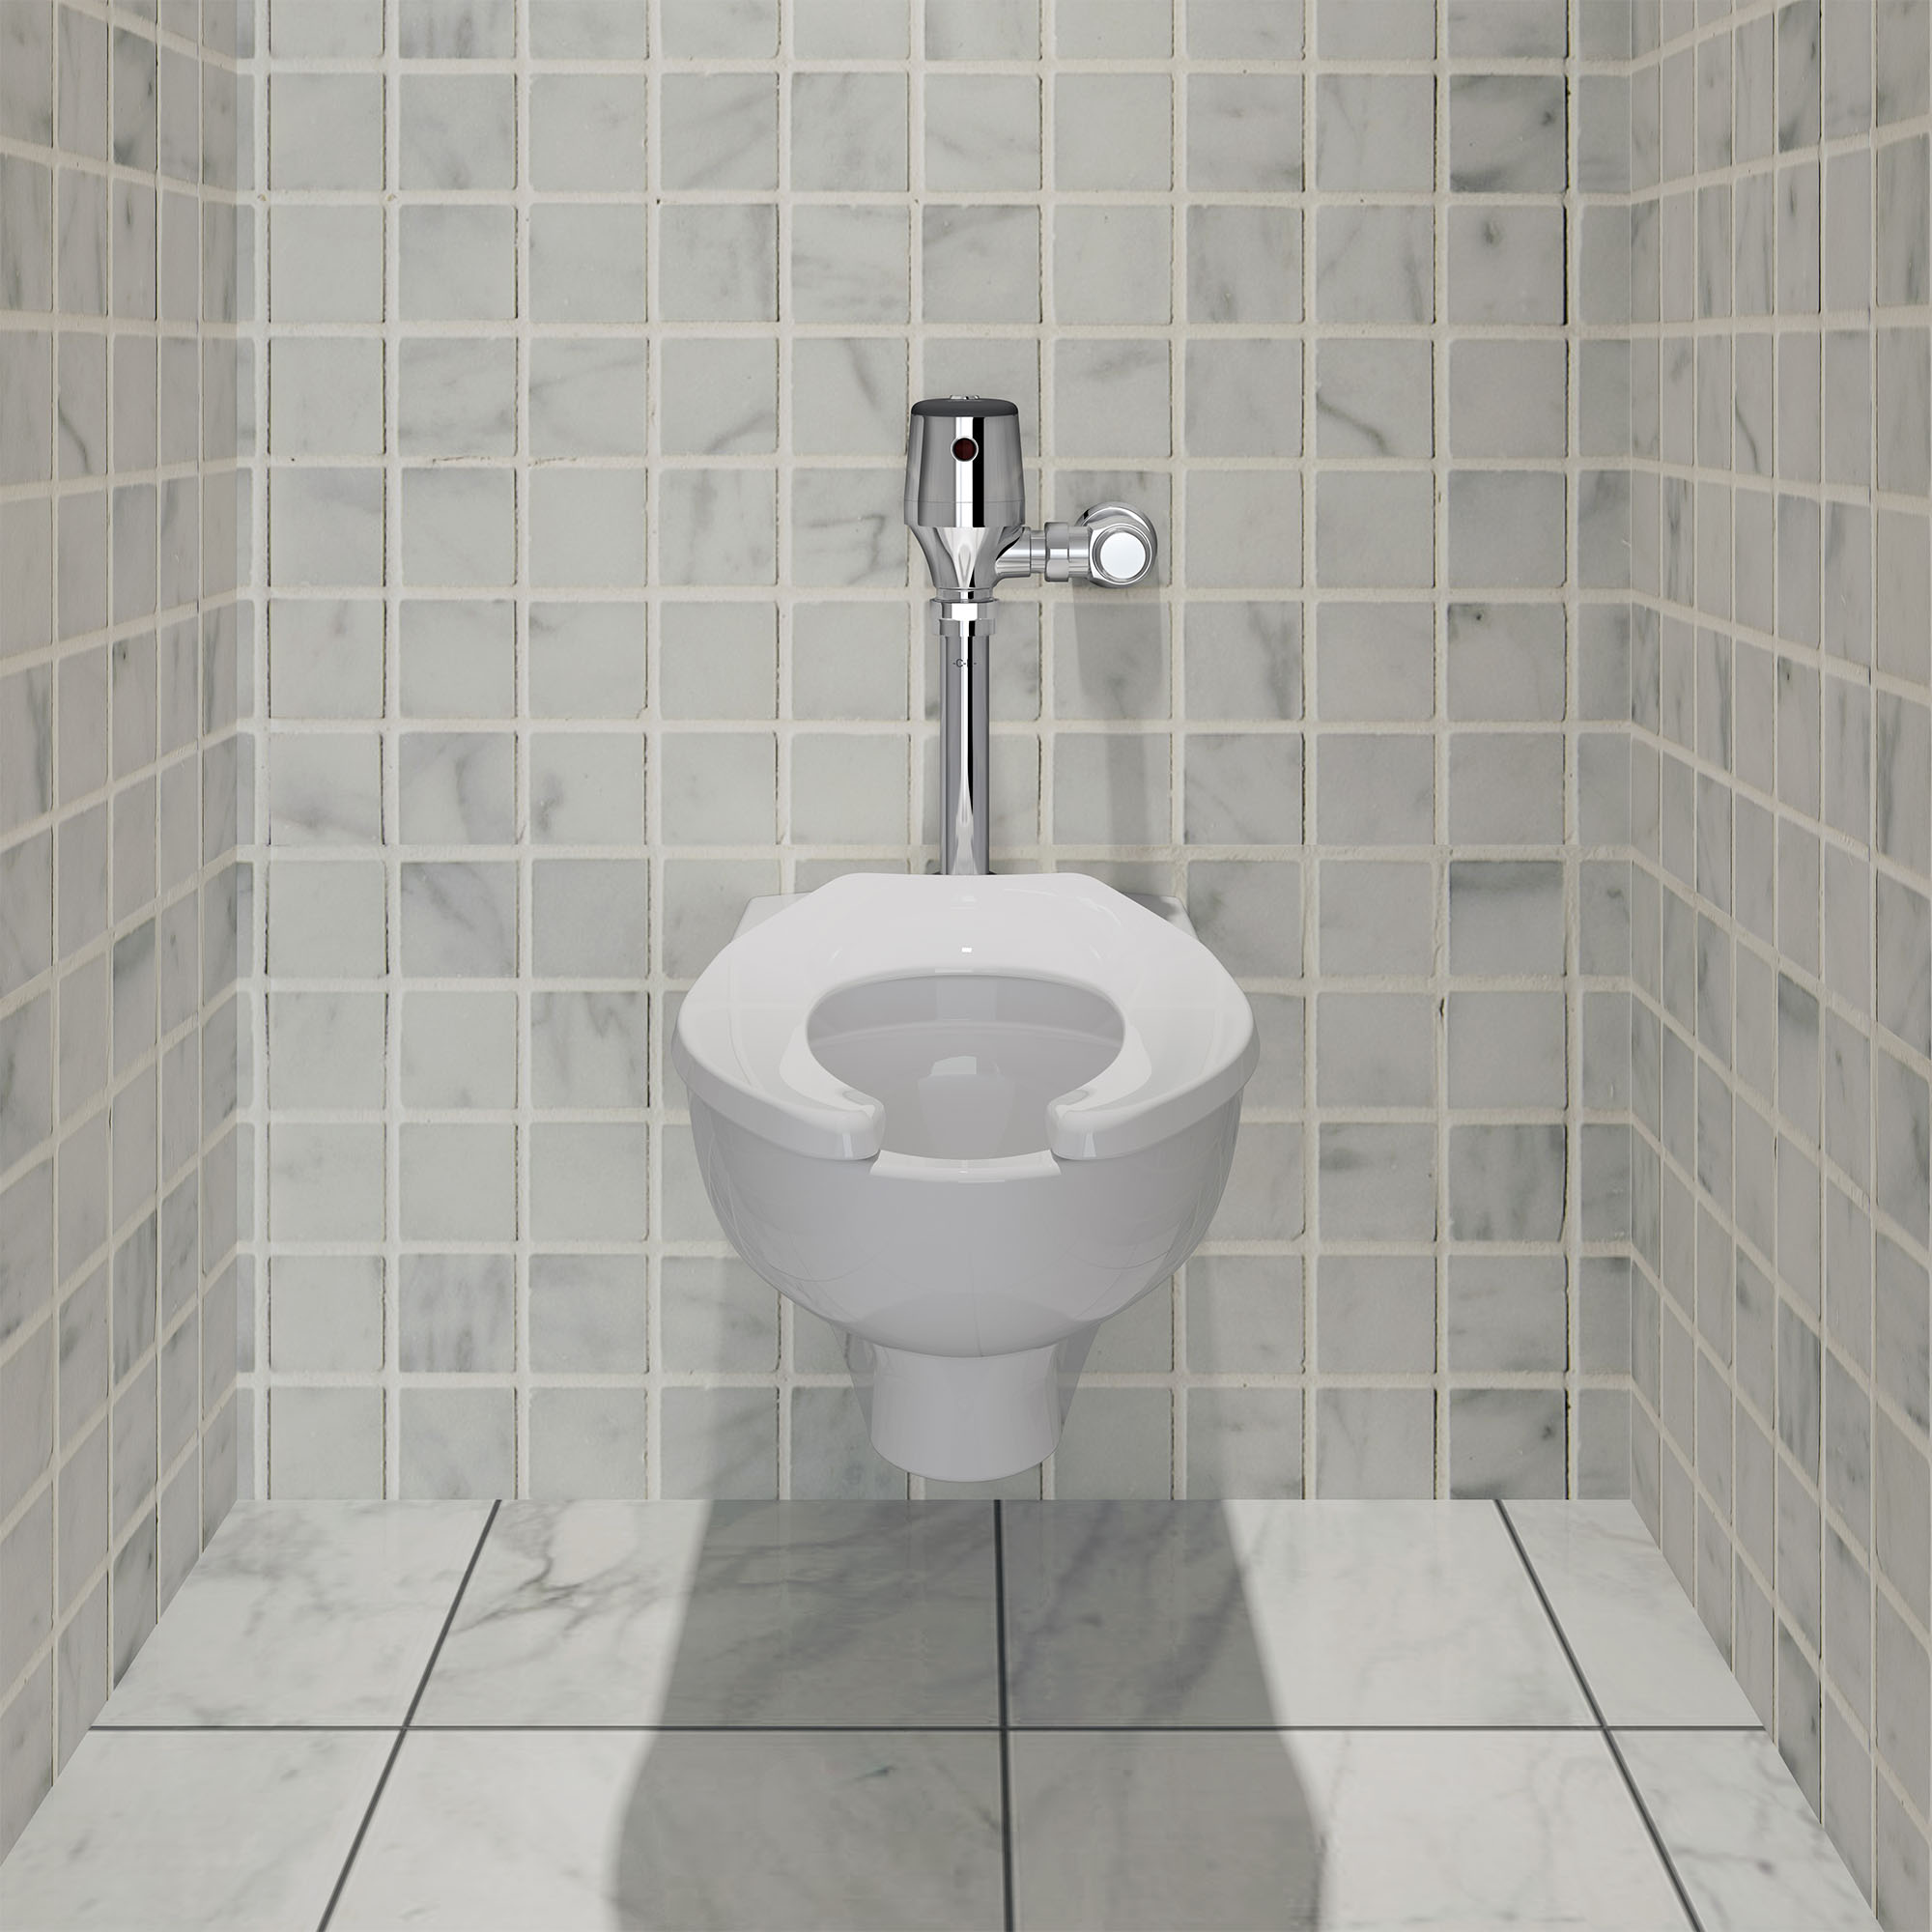 UltimaMC SelectronicMC - Robinet de chasse d'eau pour toilettes exposées, à diaphragme, modèle de base, double chasse 1,28/1,1 gpc (4,8/4,2 Lpc)